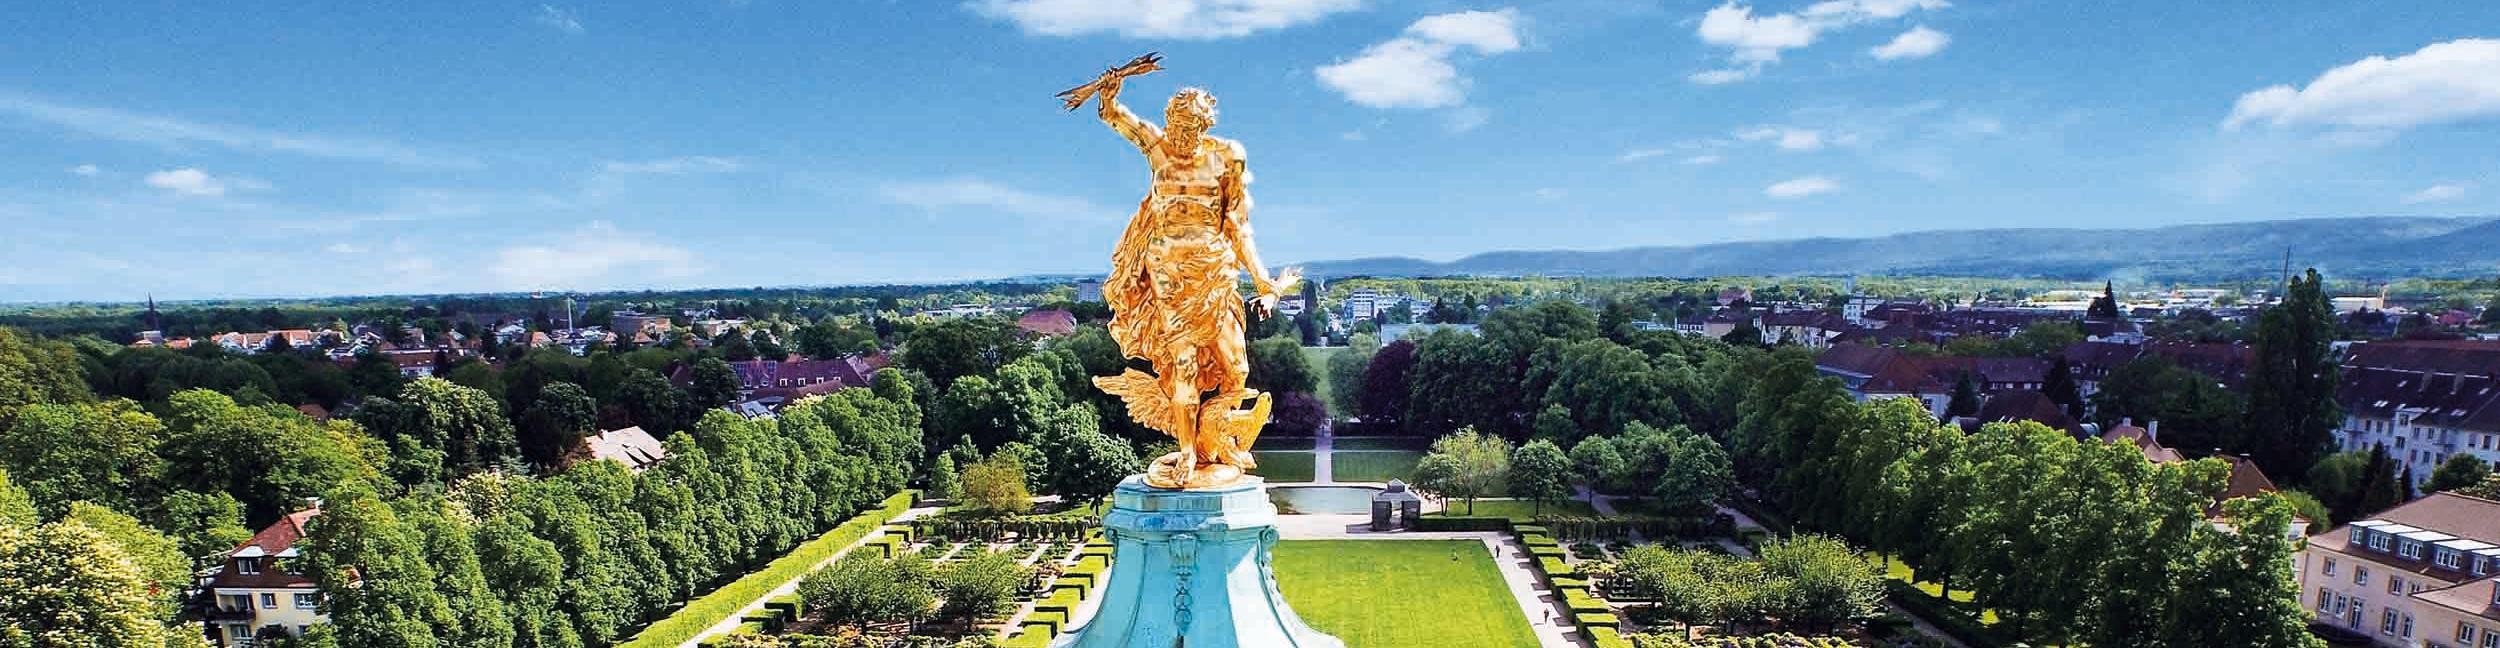 Golden man at Rastatt Castle. Photo: Joachim Gerstner